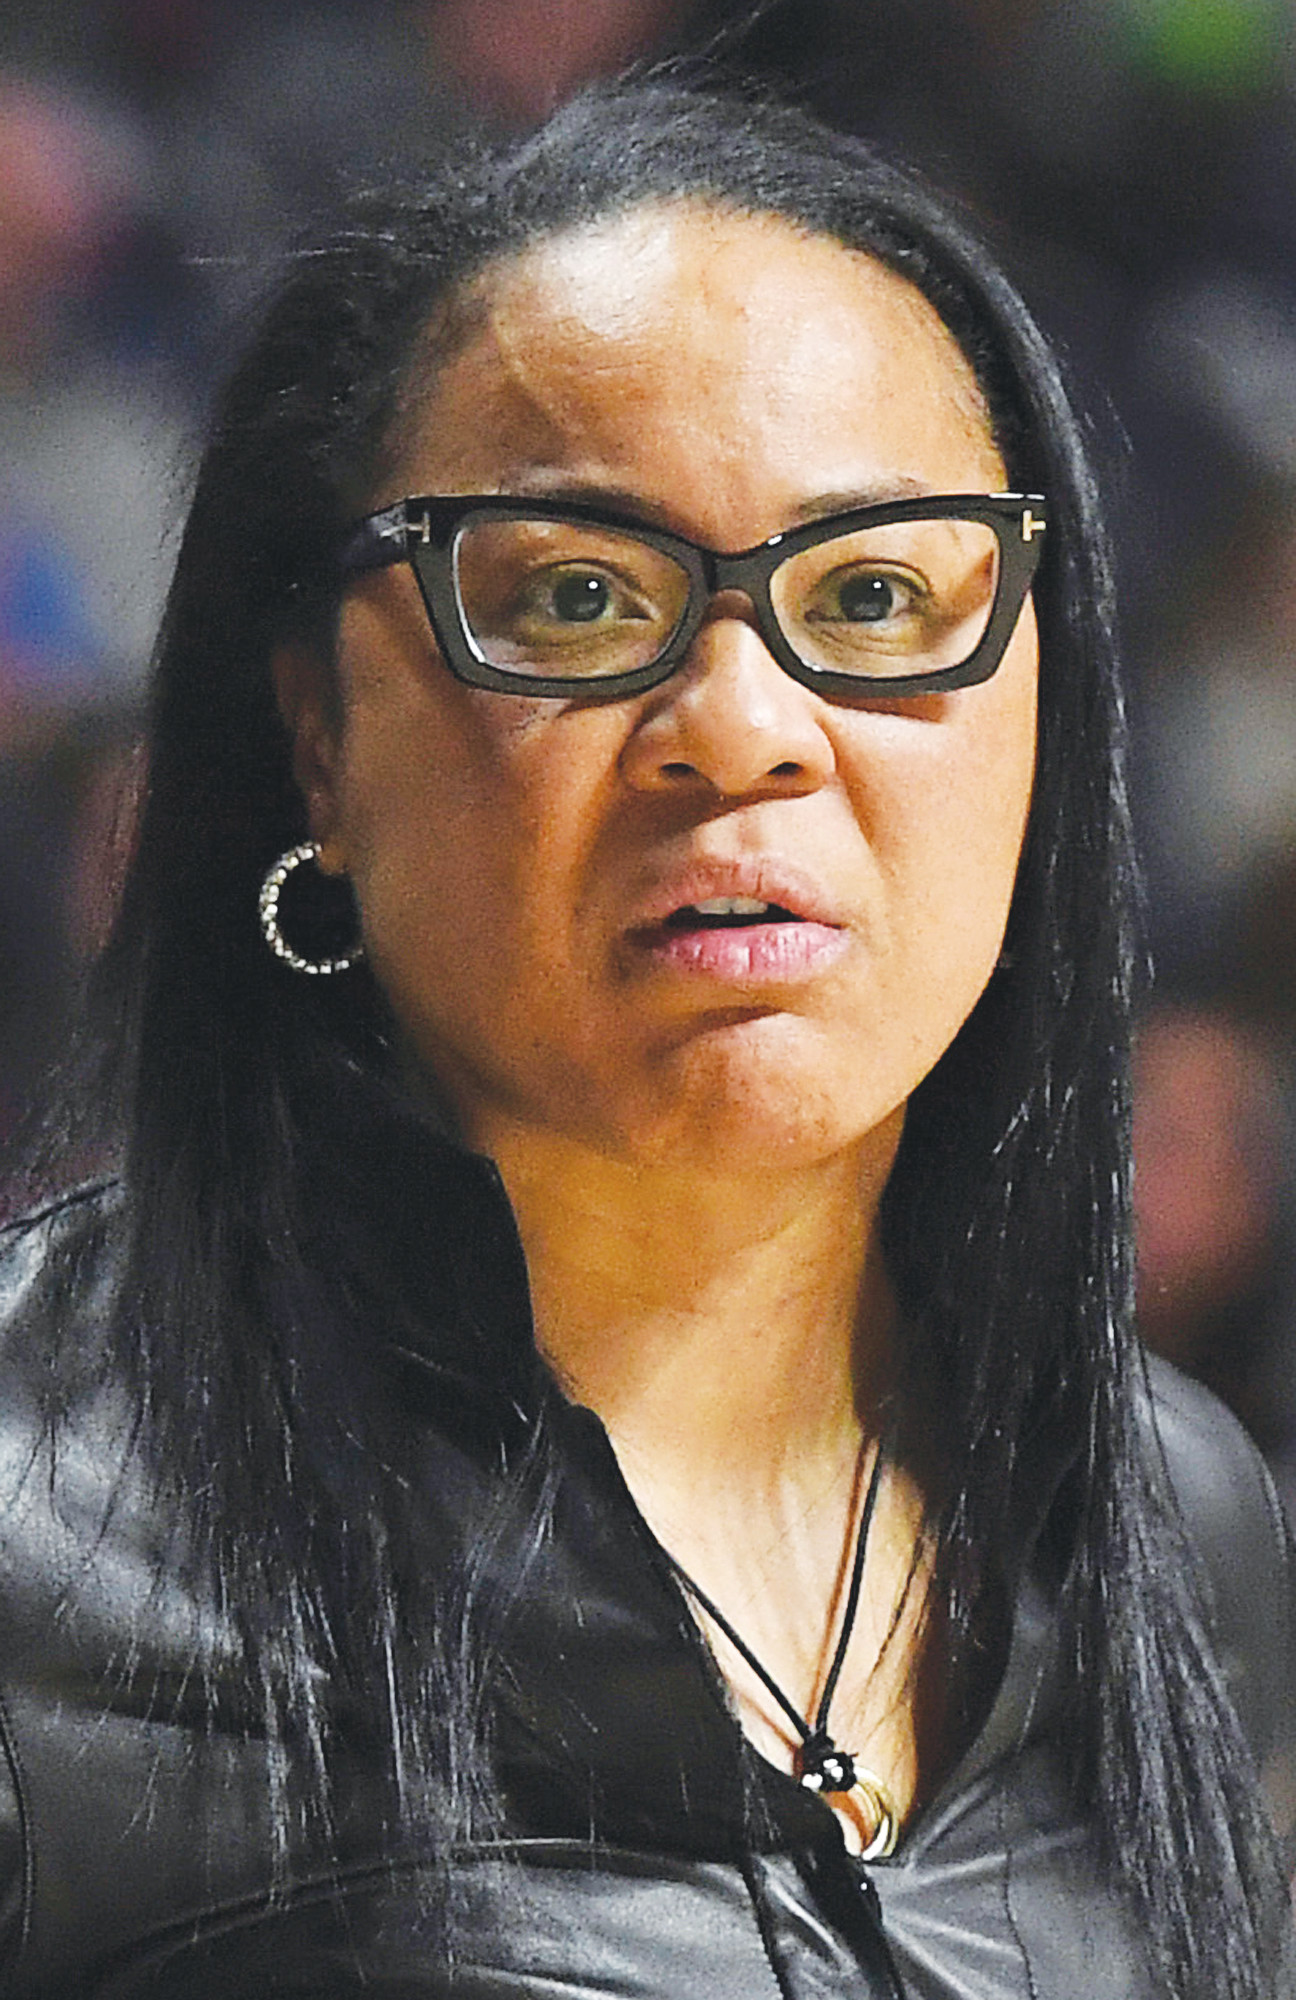 South Carolina head coach Dawn Staley